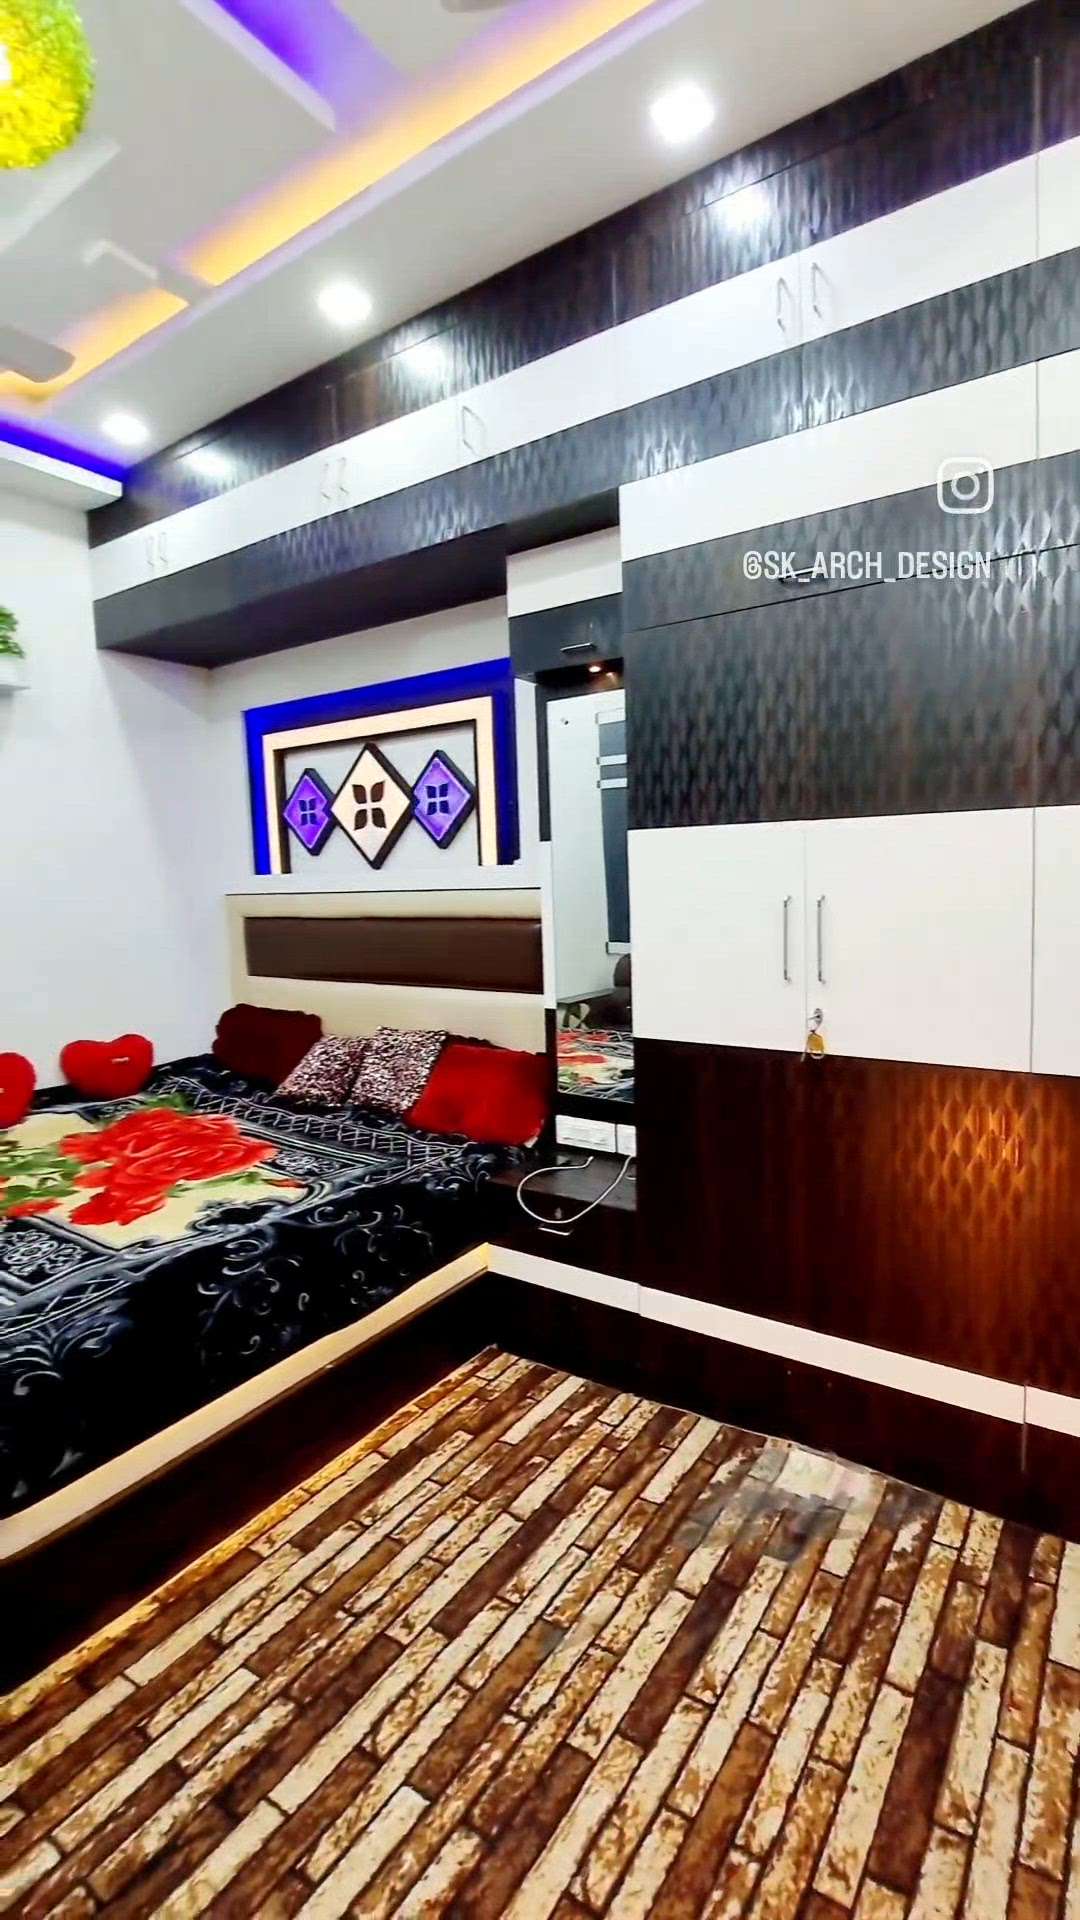 Bedroom interior design
TV unit design 
#MasterBedroom #interior #tvunits #panling 
.
.